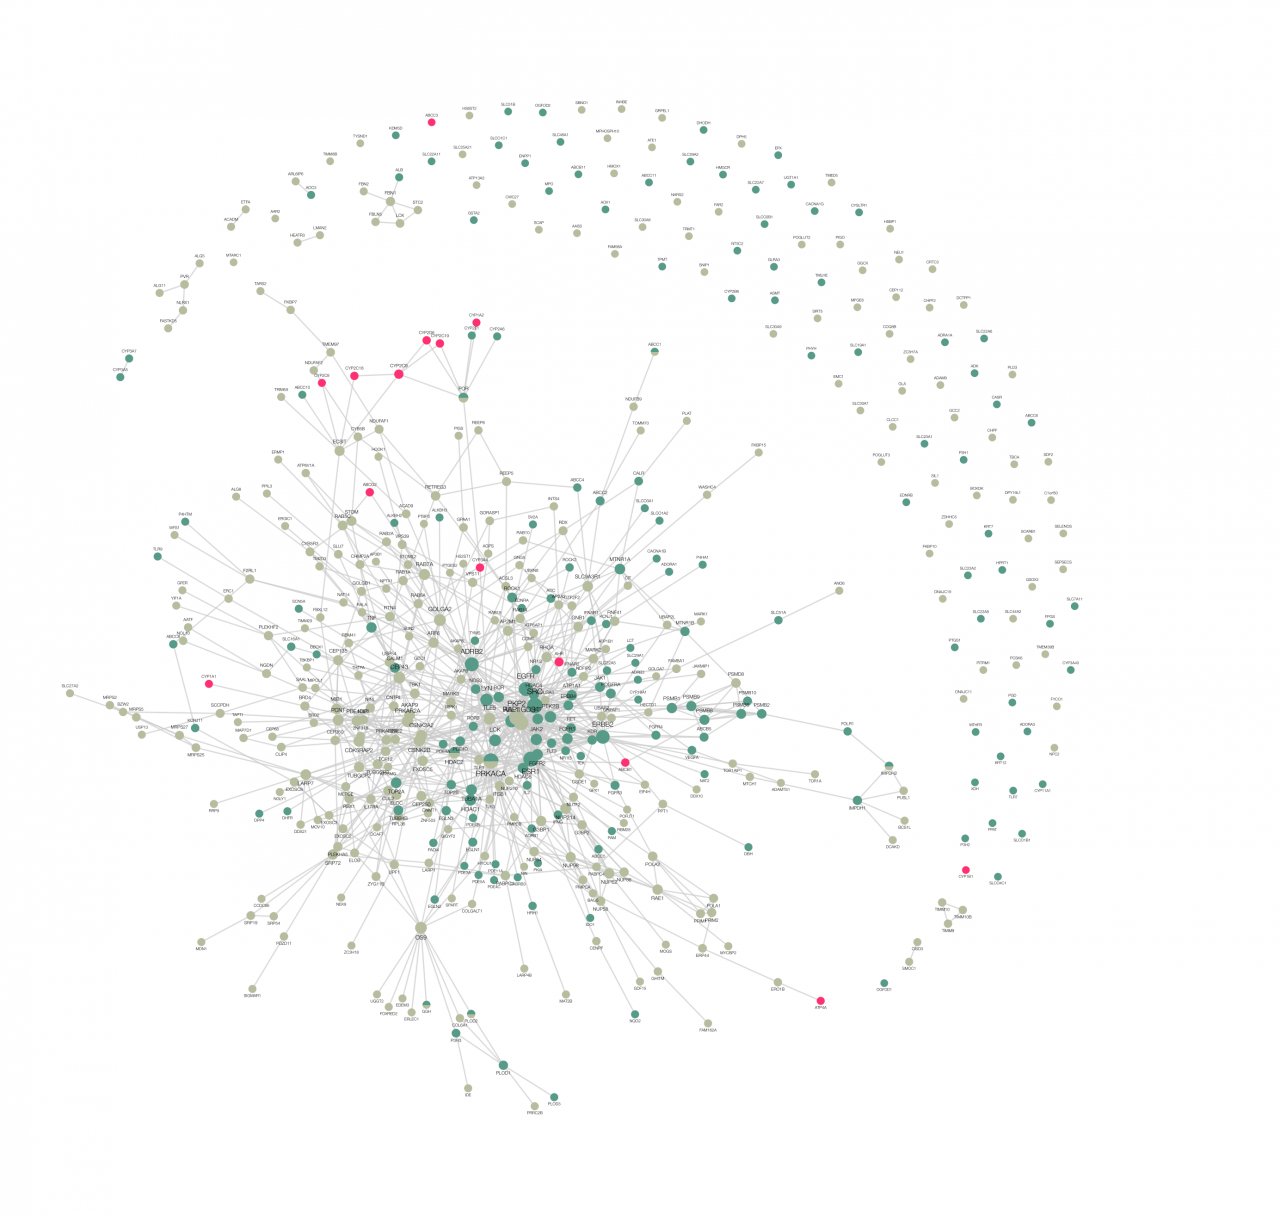 Netzwerk-Cluster miteinander verbundener Punkte, daneben halbmondförmig einzelne Punkte